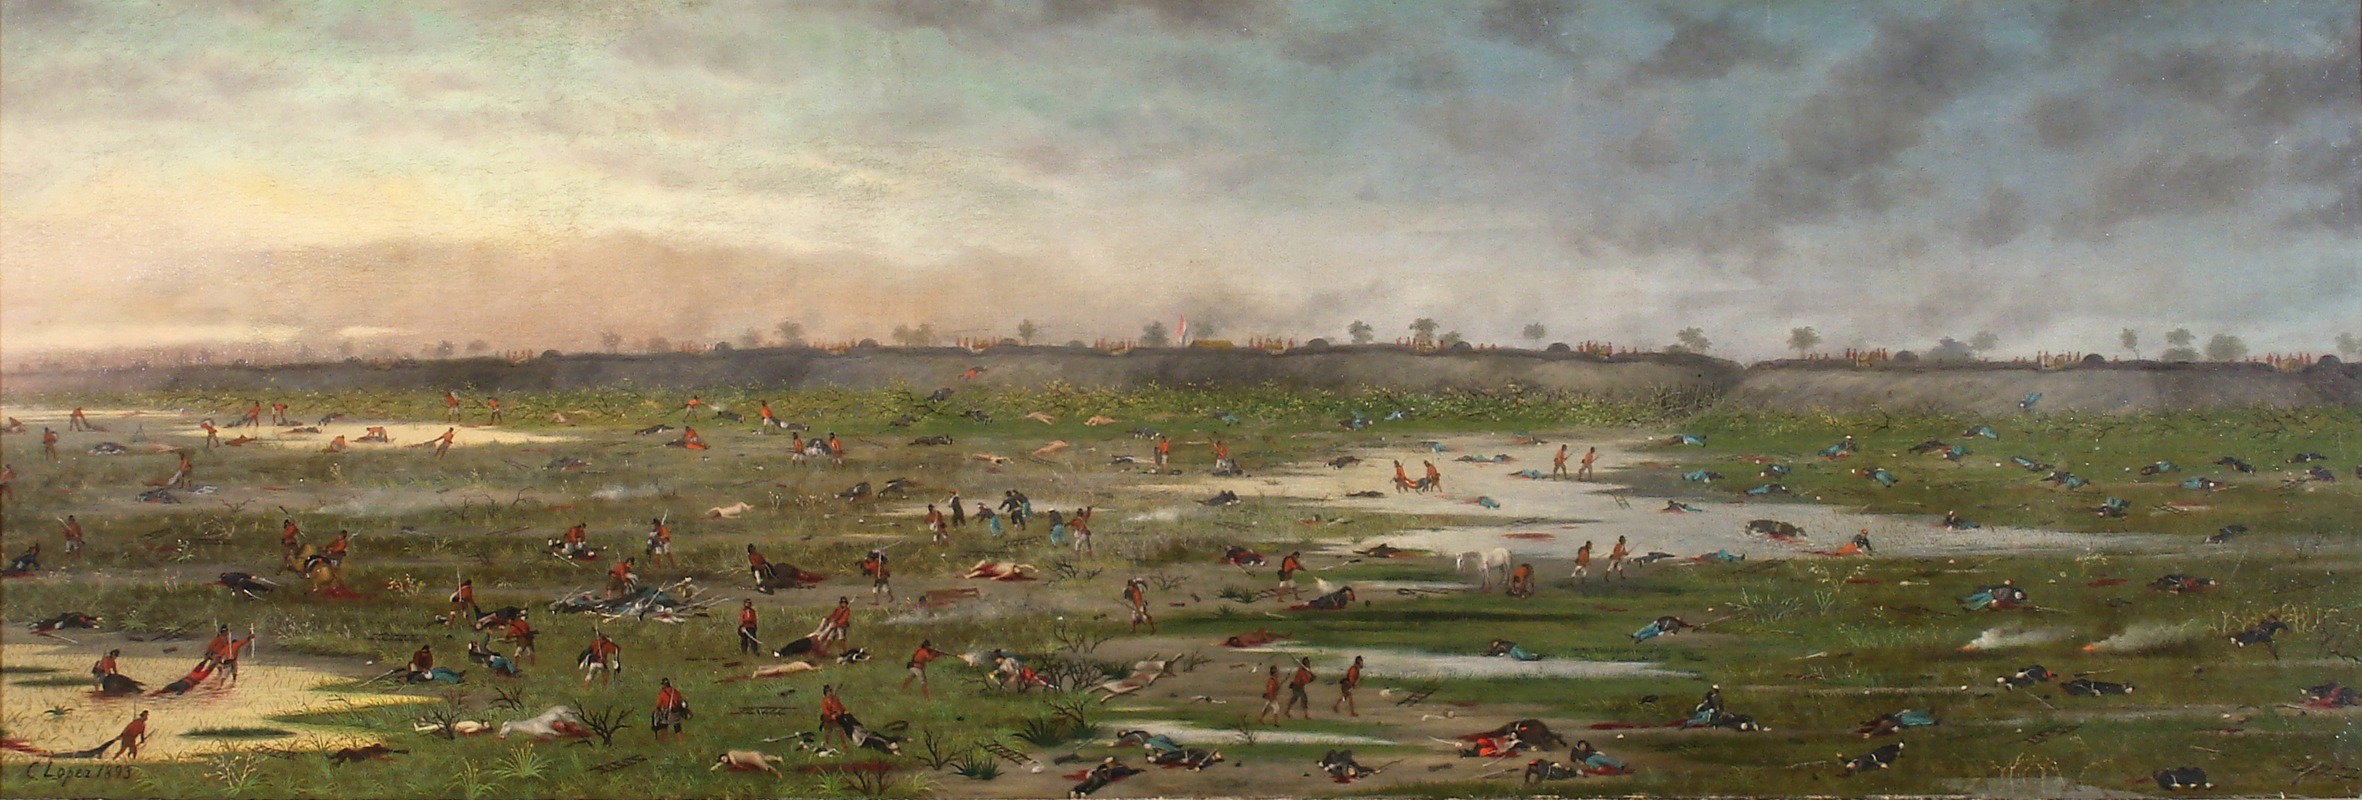 Cándido Lopez - Después de la Batalla de Curupaytí